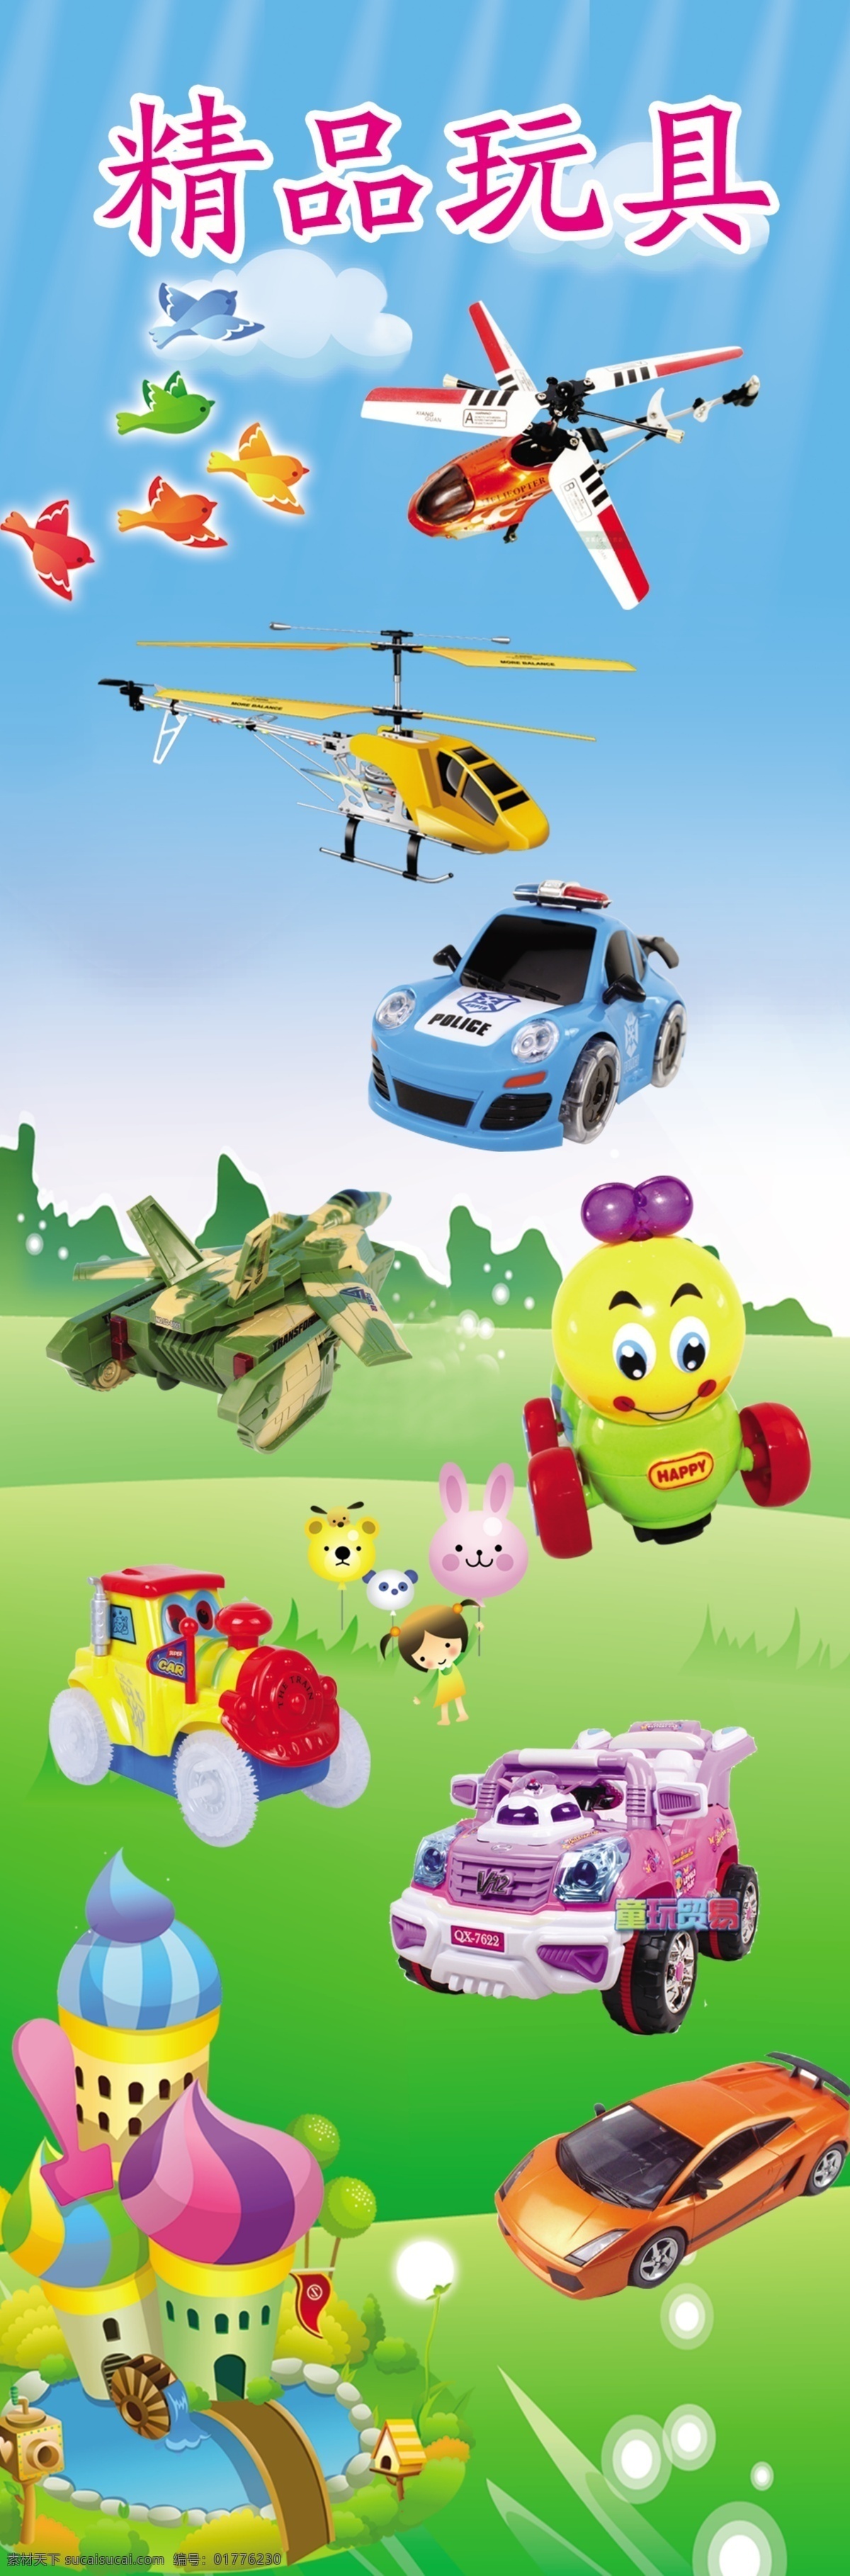 电动玩具 儿童玩具 广告设计模板 玩具 玩具飞机 玩具汽车 源文件 展板模板 精品 模板下载 精品玩具 psd源文件